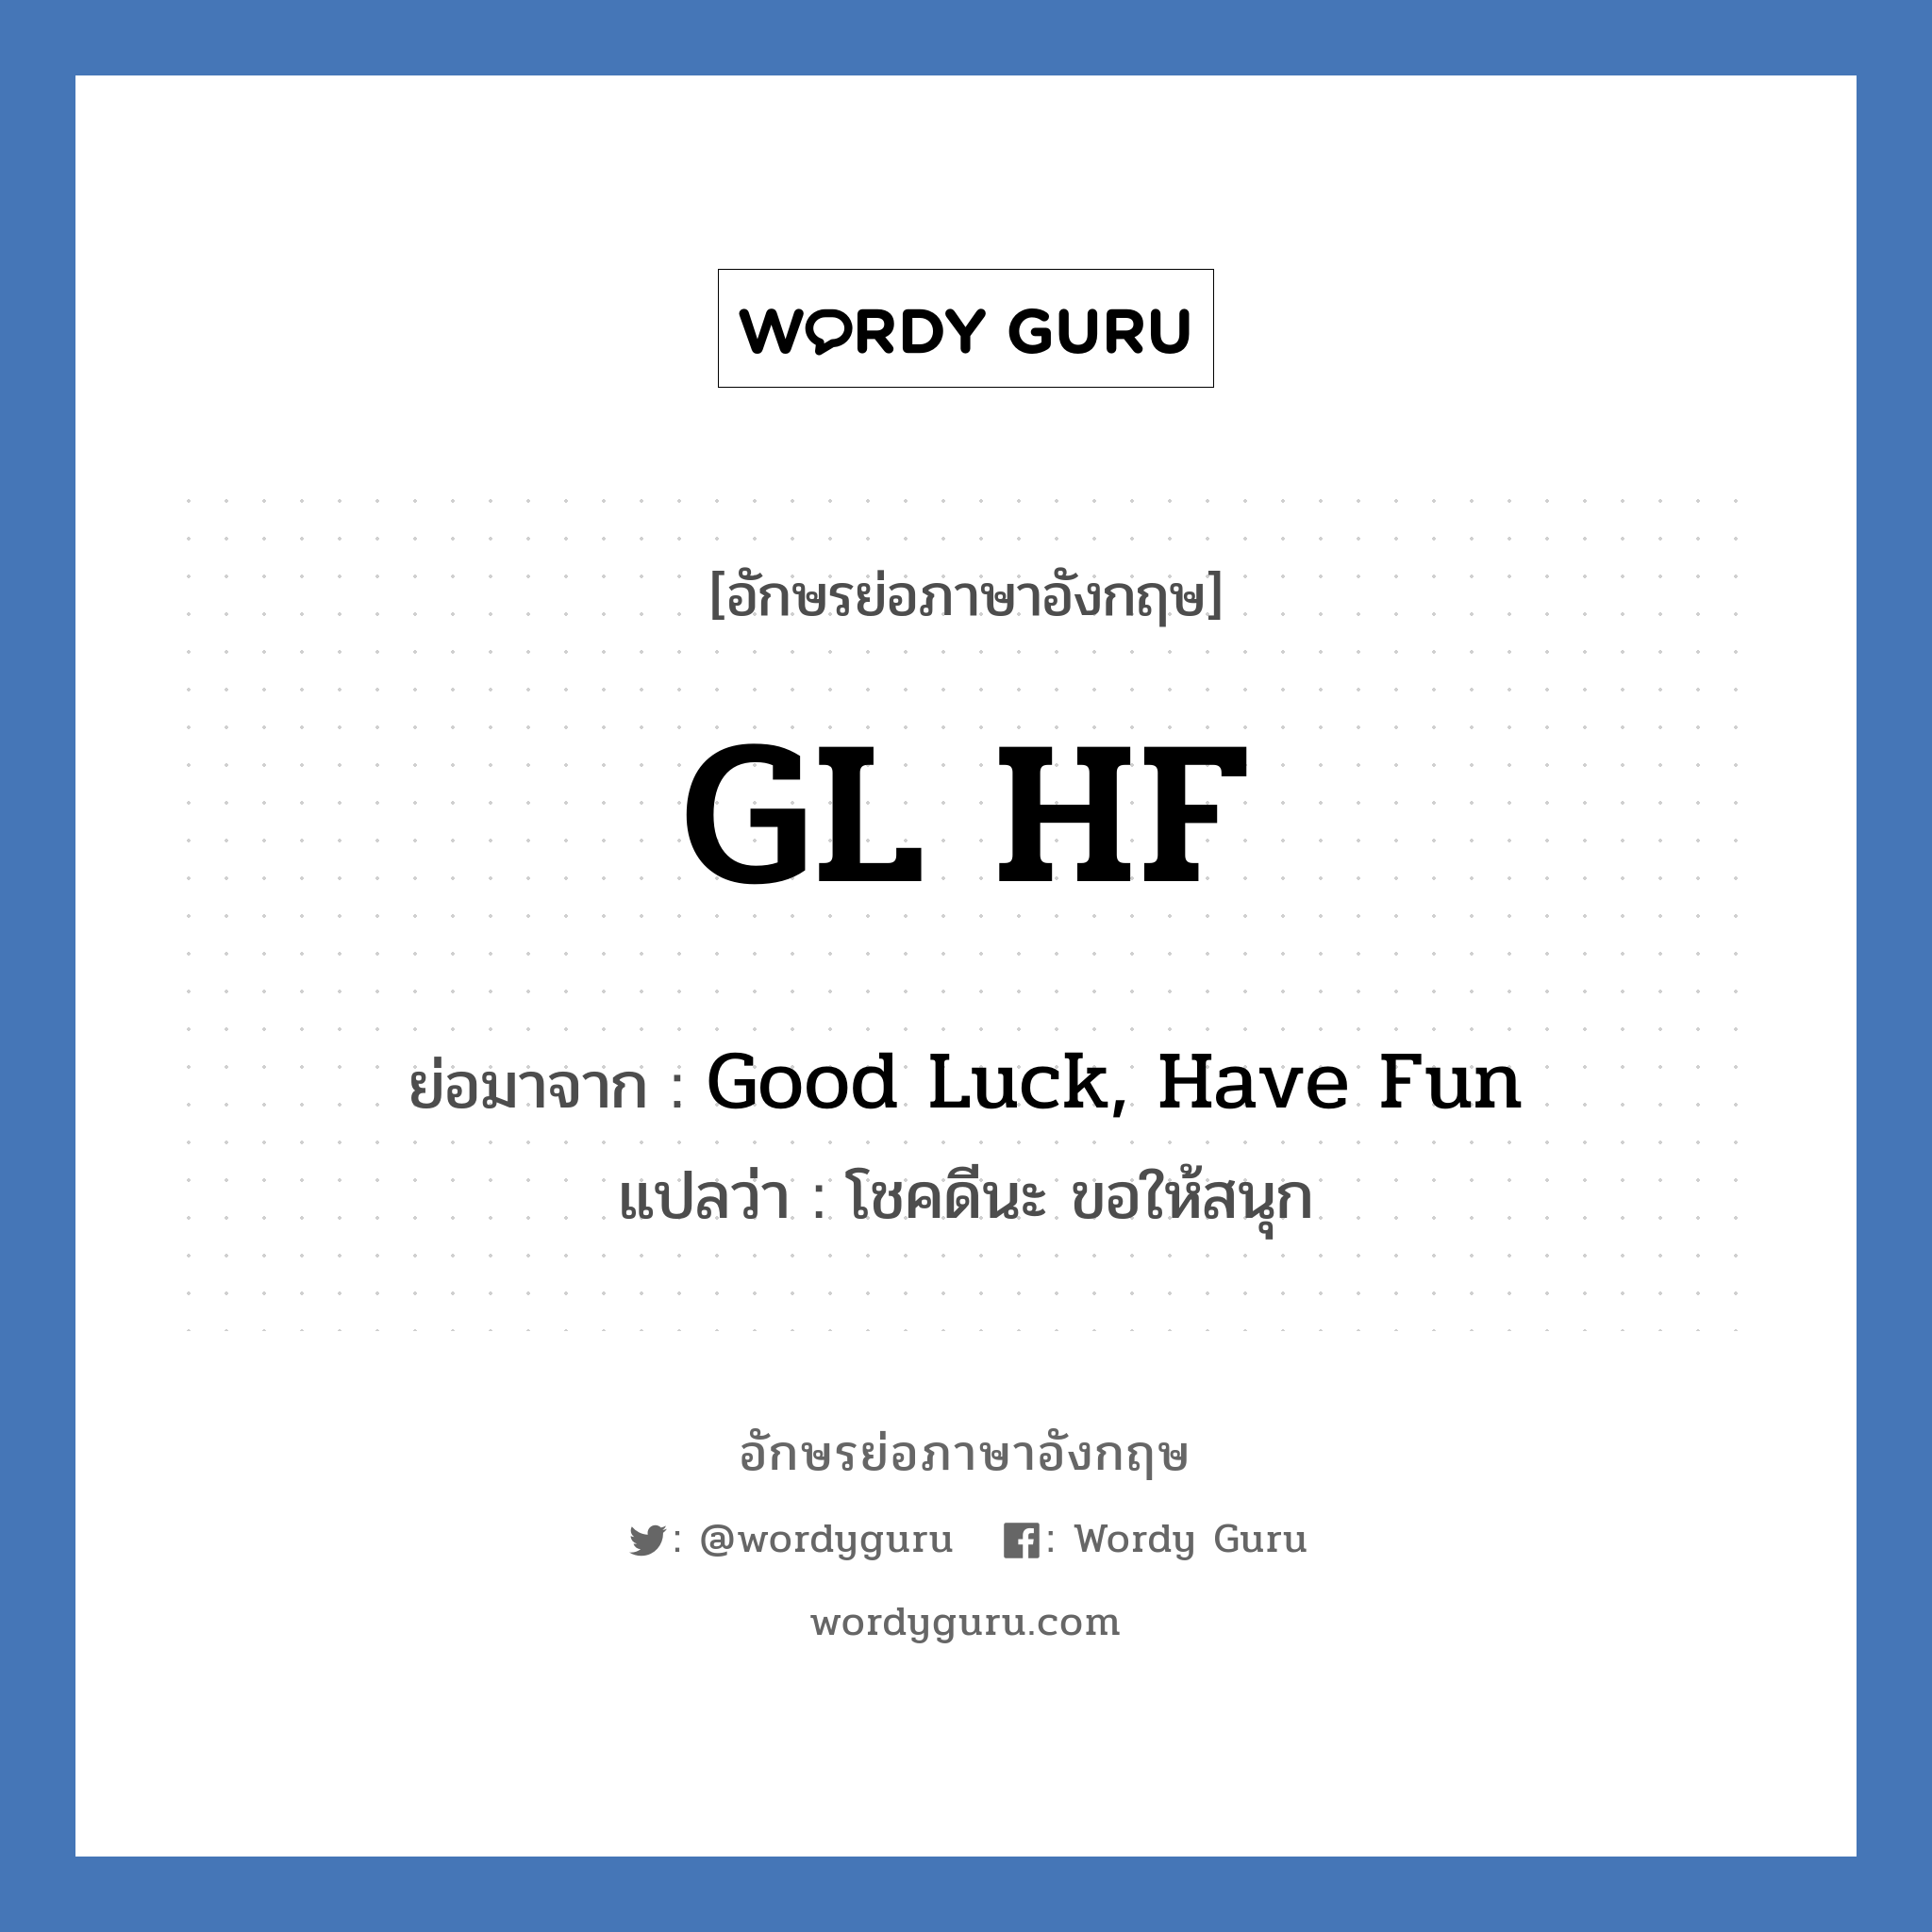 Good Luck, Have Fun คำย่อคือ? แปลว่า?, อักษรย่อภาษาอังกฤษ Good Luck, Have Fun ย่อมาจาก GL HF แปลว่า โชคดีนะ ขอให้สนุก